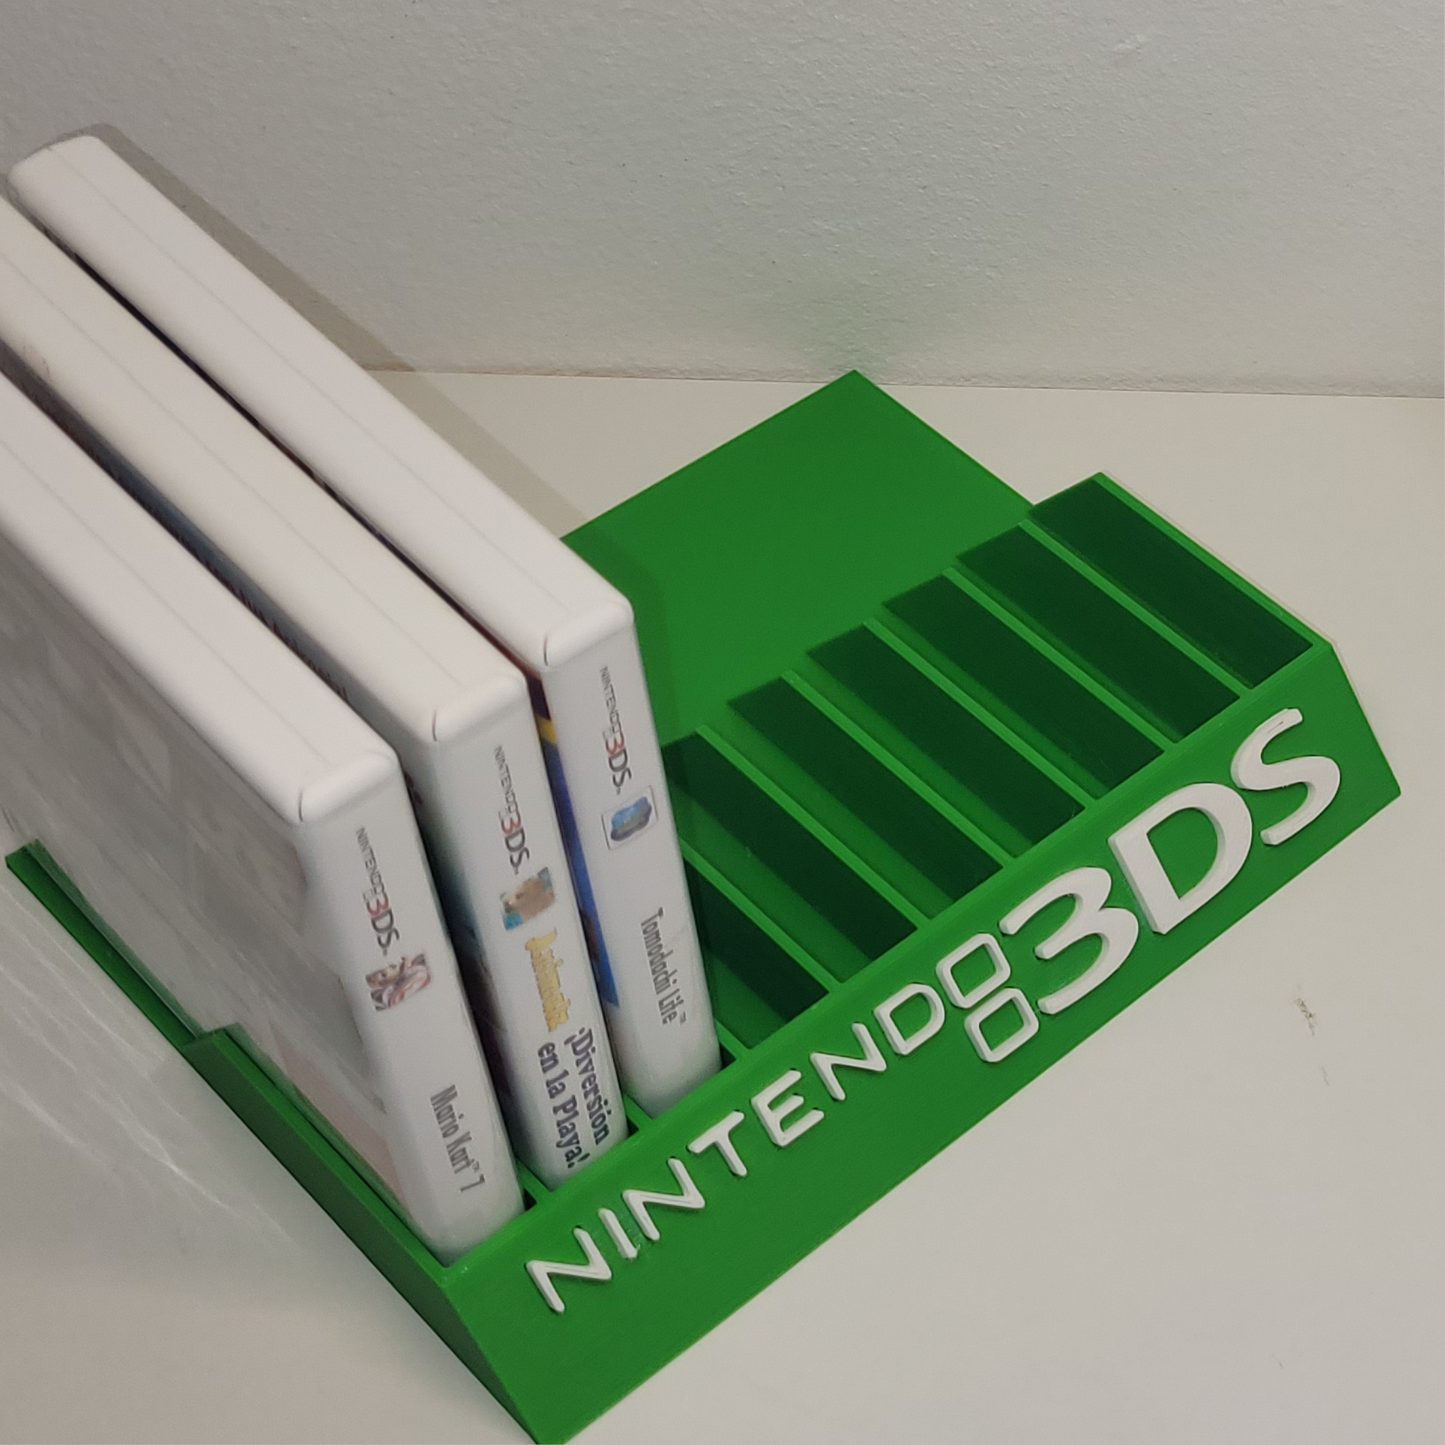 Expositor Juegos Nintendo 3DS